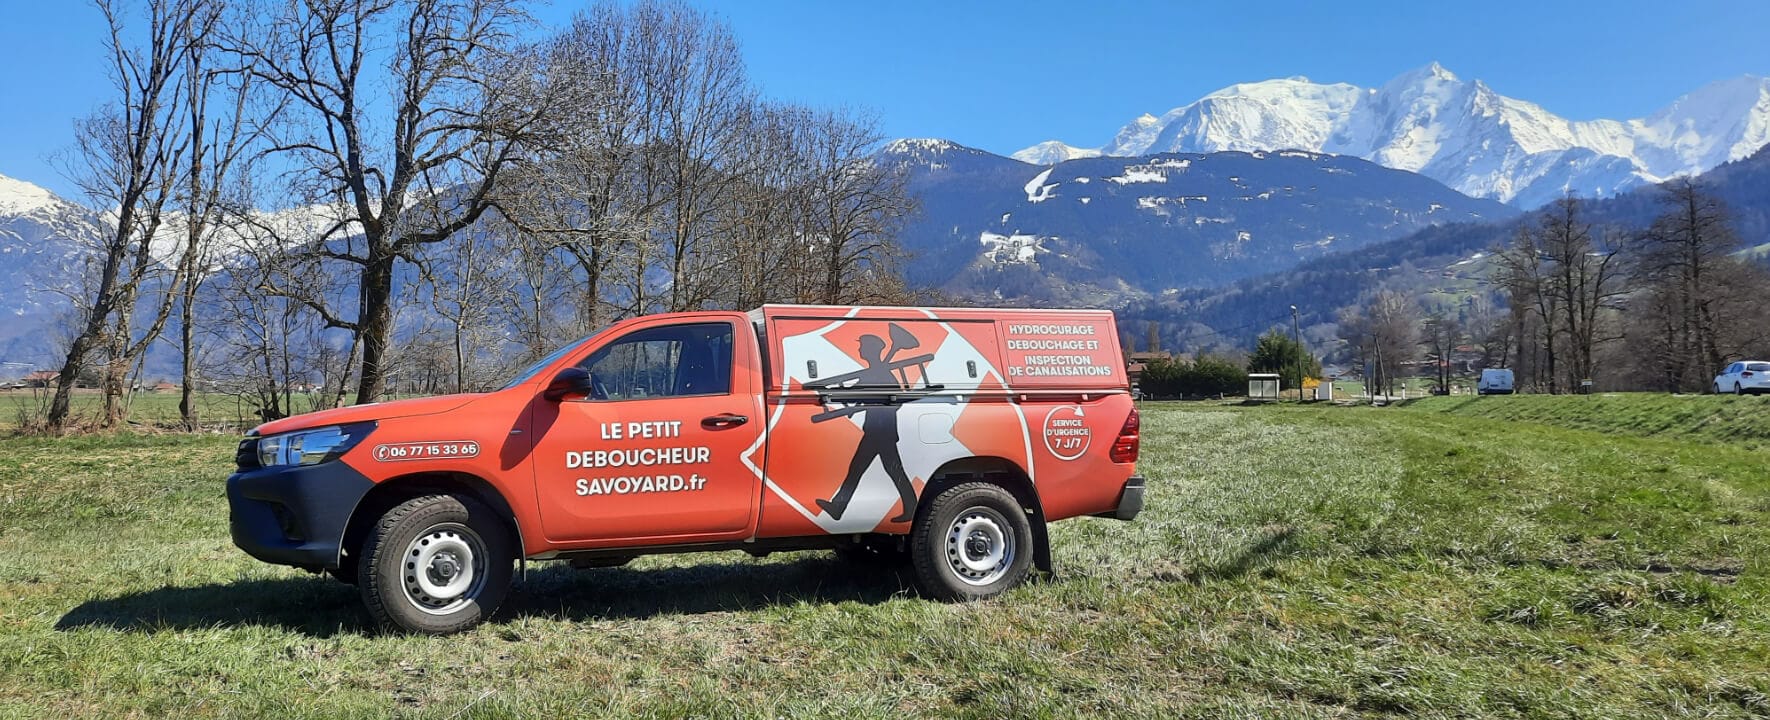 Le petit déboucheur Savoyard - Débouchage canalisation Mont Blanc